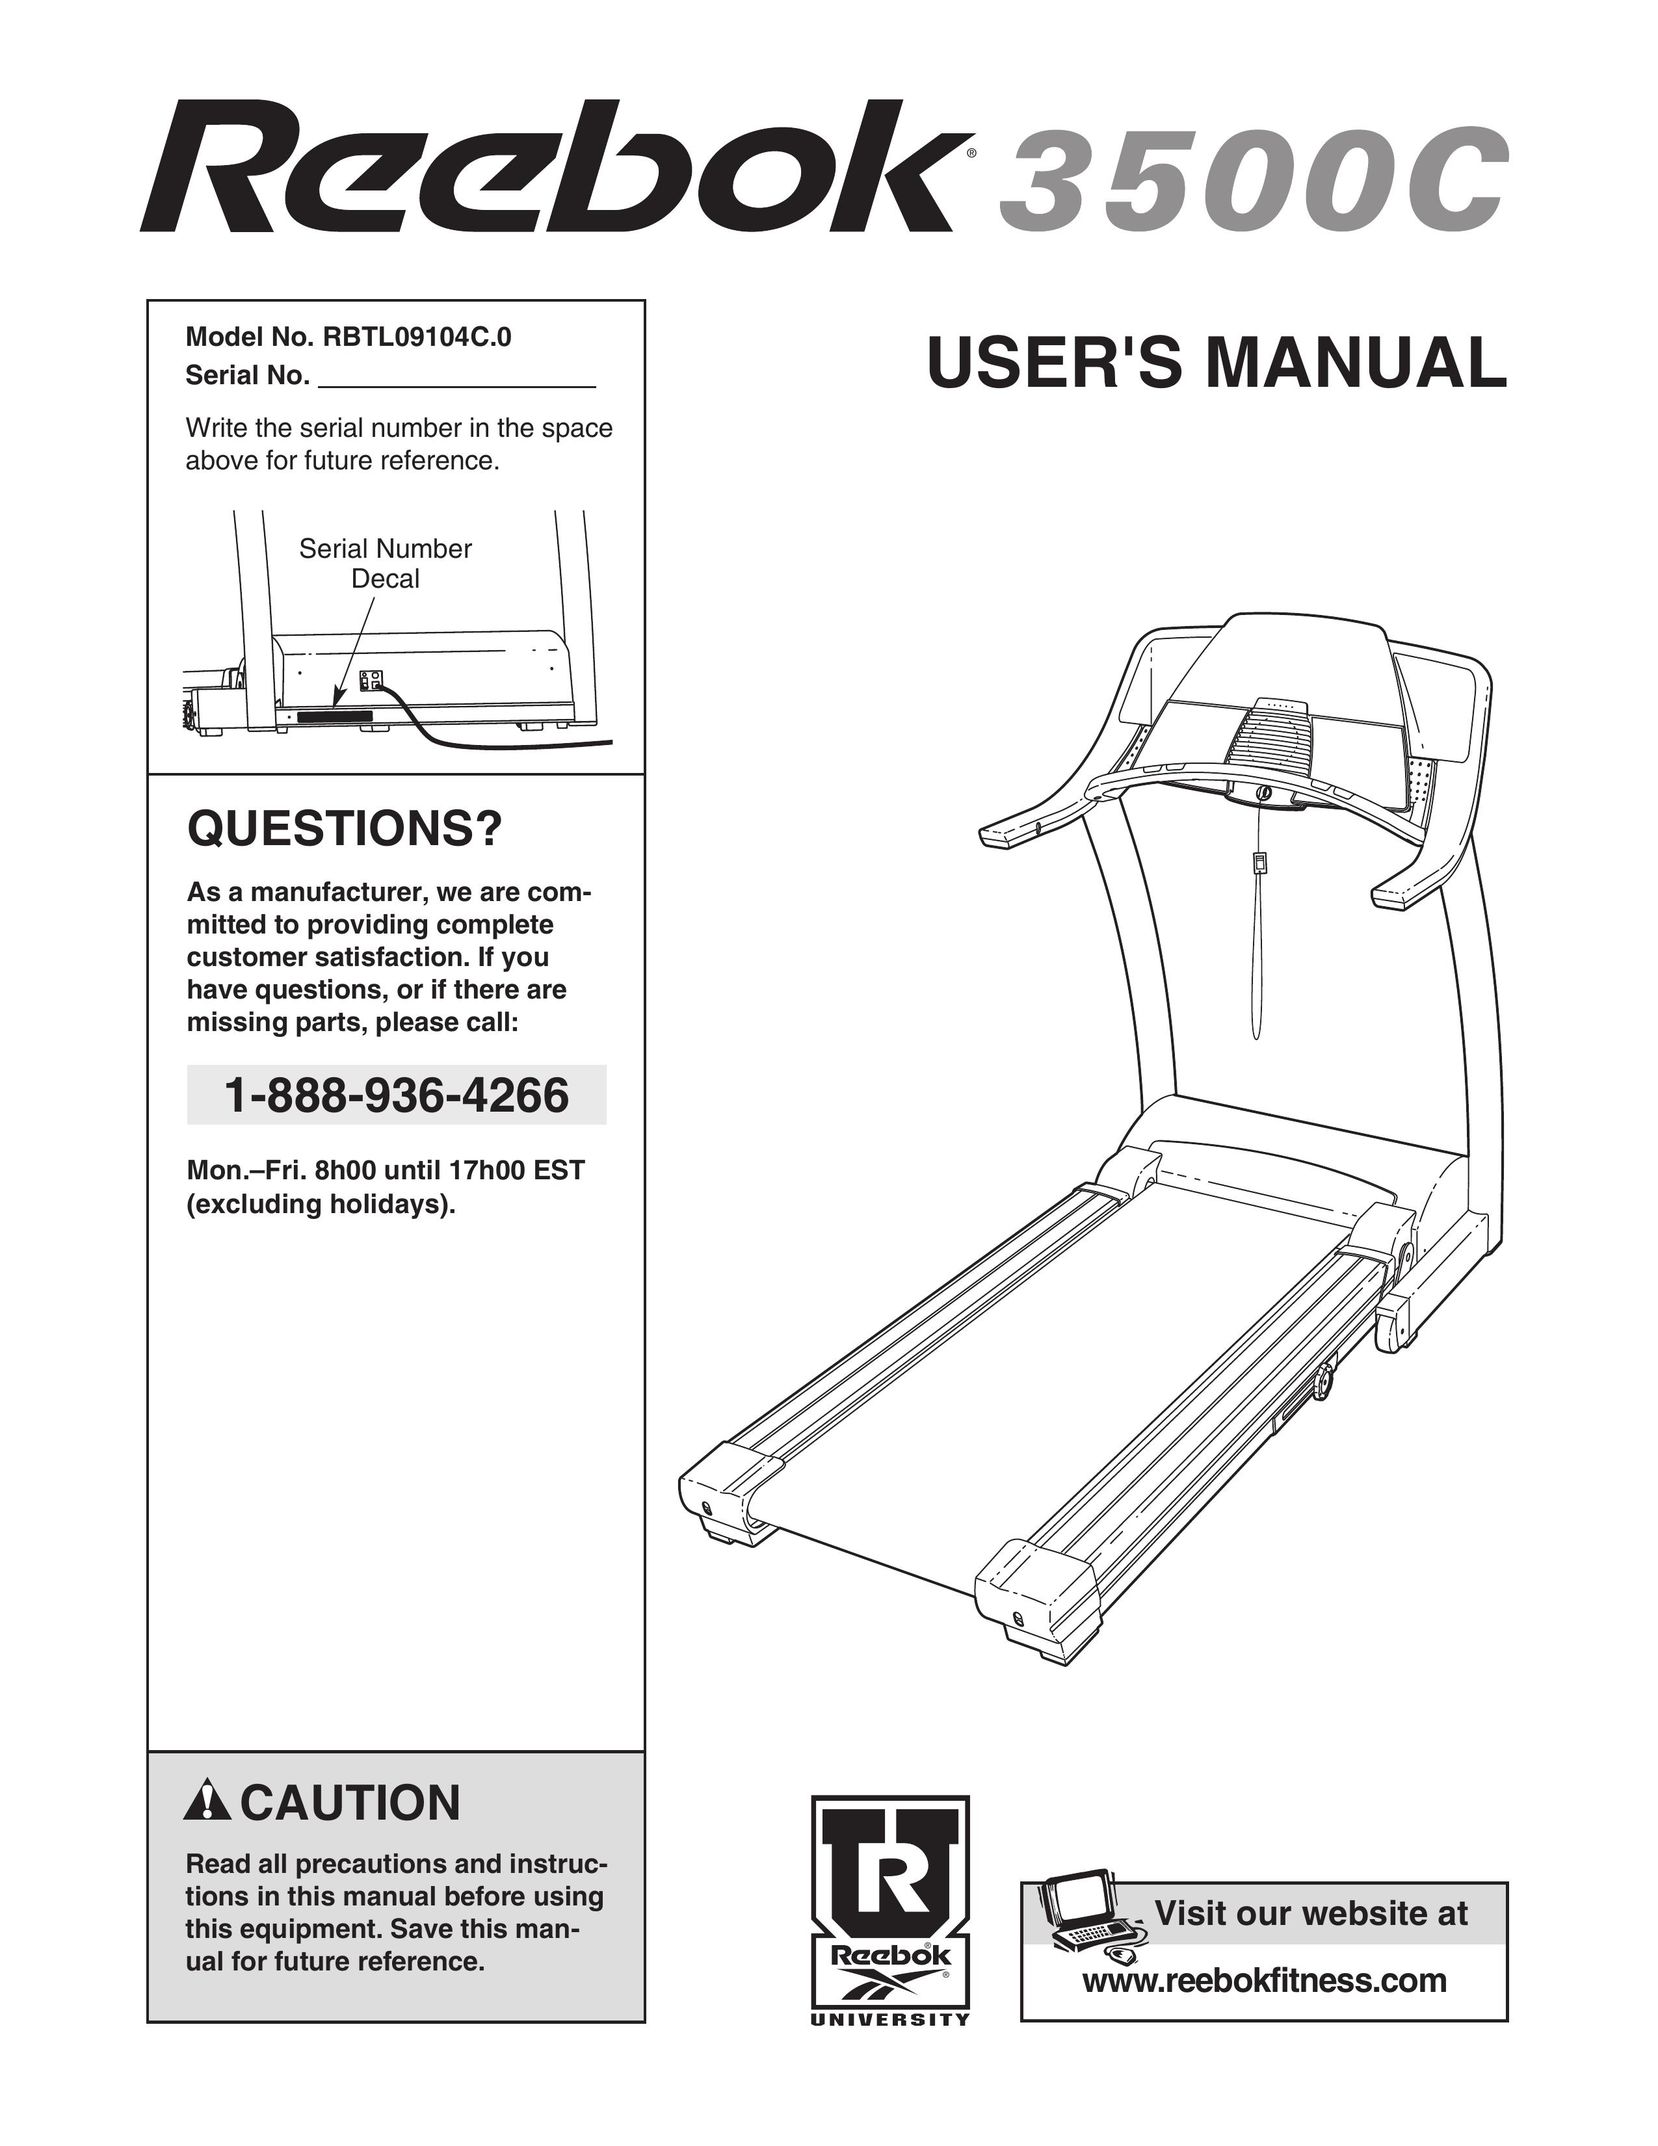 Reebok Fitness RBTL09104C.0 Treadmill User Manual